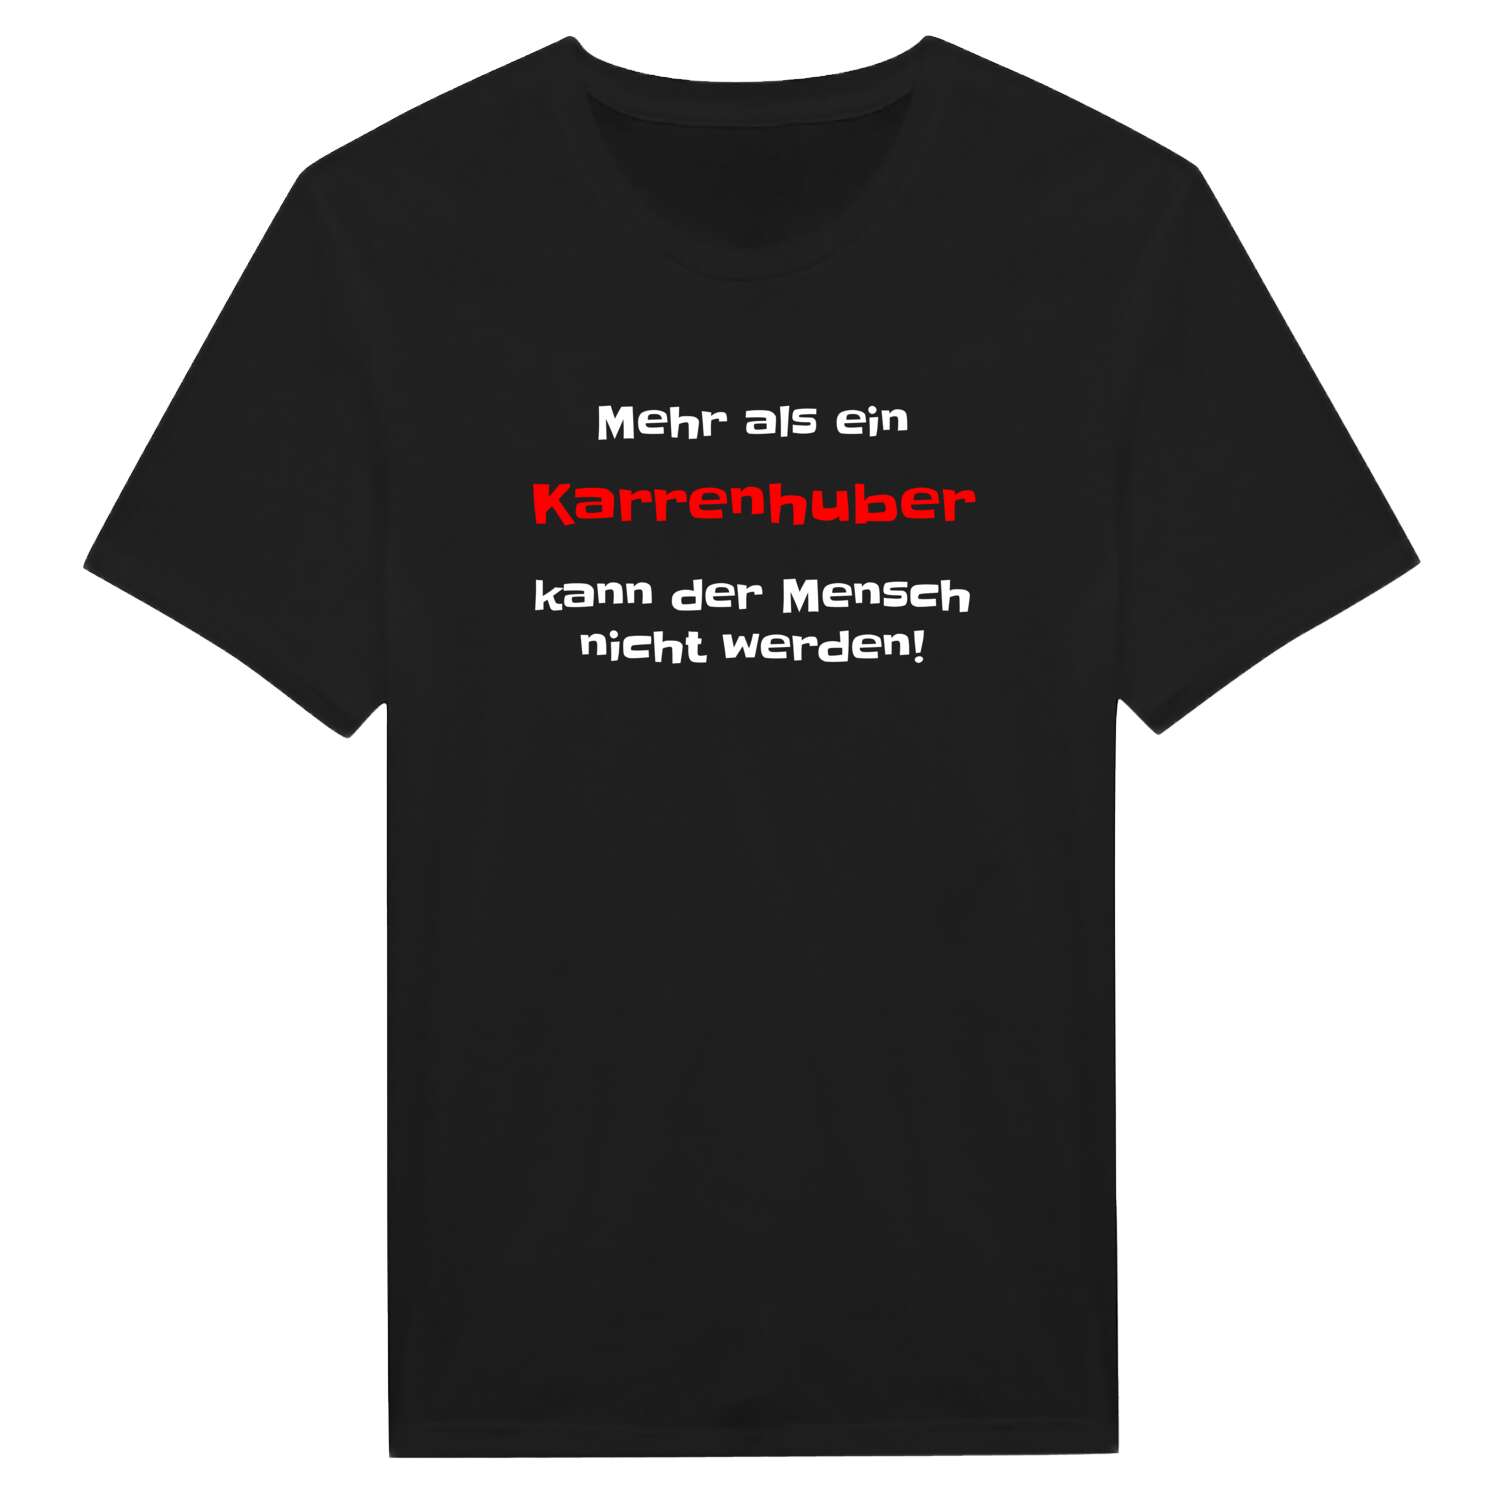 Karrenhub T-Shirt »Mehr als ein«